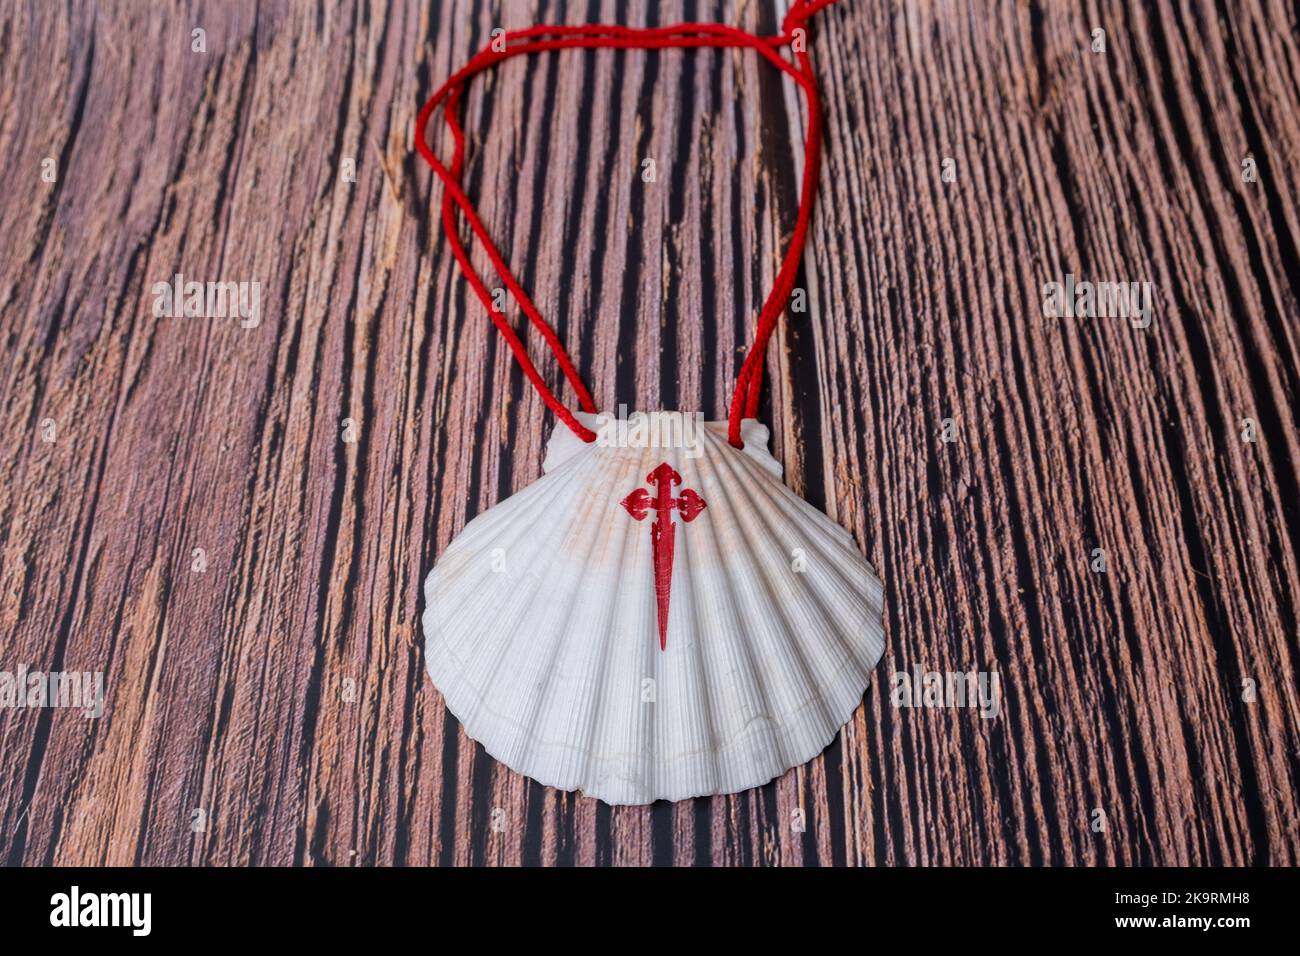 Pilgrim Scallop coquillages avec la Croix de l'ordre de Santiago. Symbole typique de pèlerinage dans le chemin de saint james isolé sur bois Banque D'Images